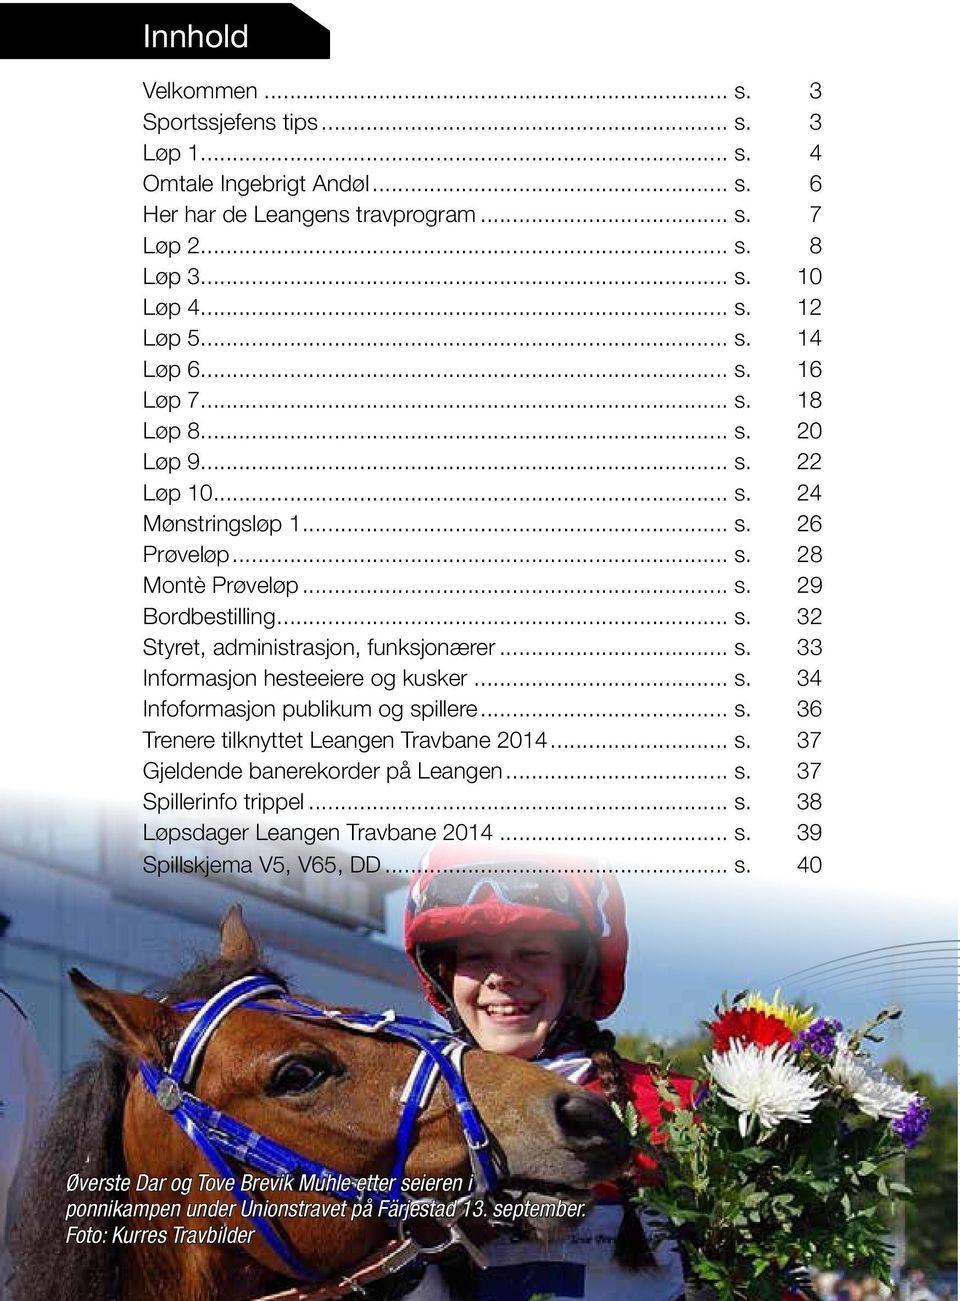 .. s. 33 Informasjon hesteeiere og kusker... s. 34 Infoformasjon publikum og spillere... s. 36 Trenere tilknyttet Leangen Travbane 2014... s. 37 Gjeldende banerekorder på Leangen... s. 37 Spillerinfo trippel.